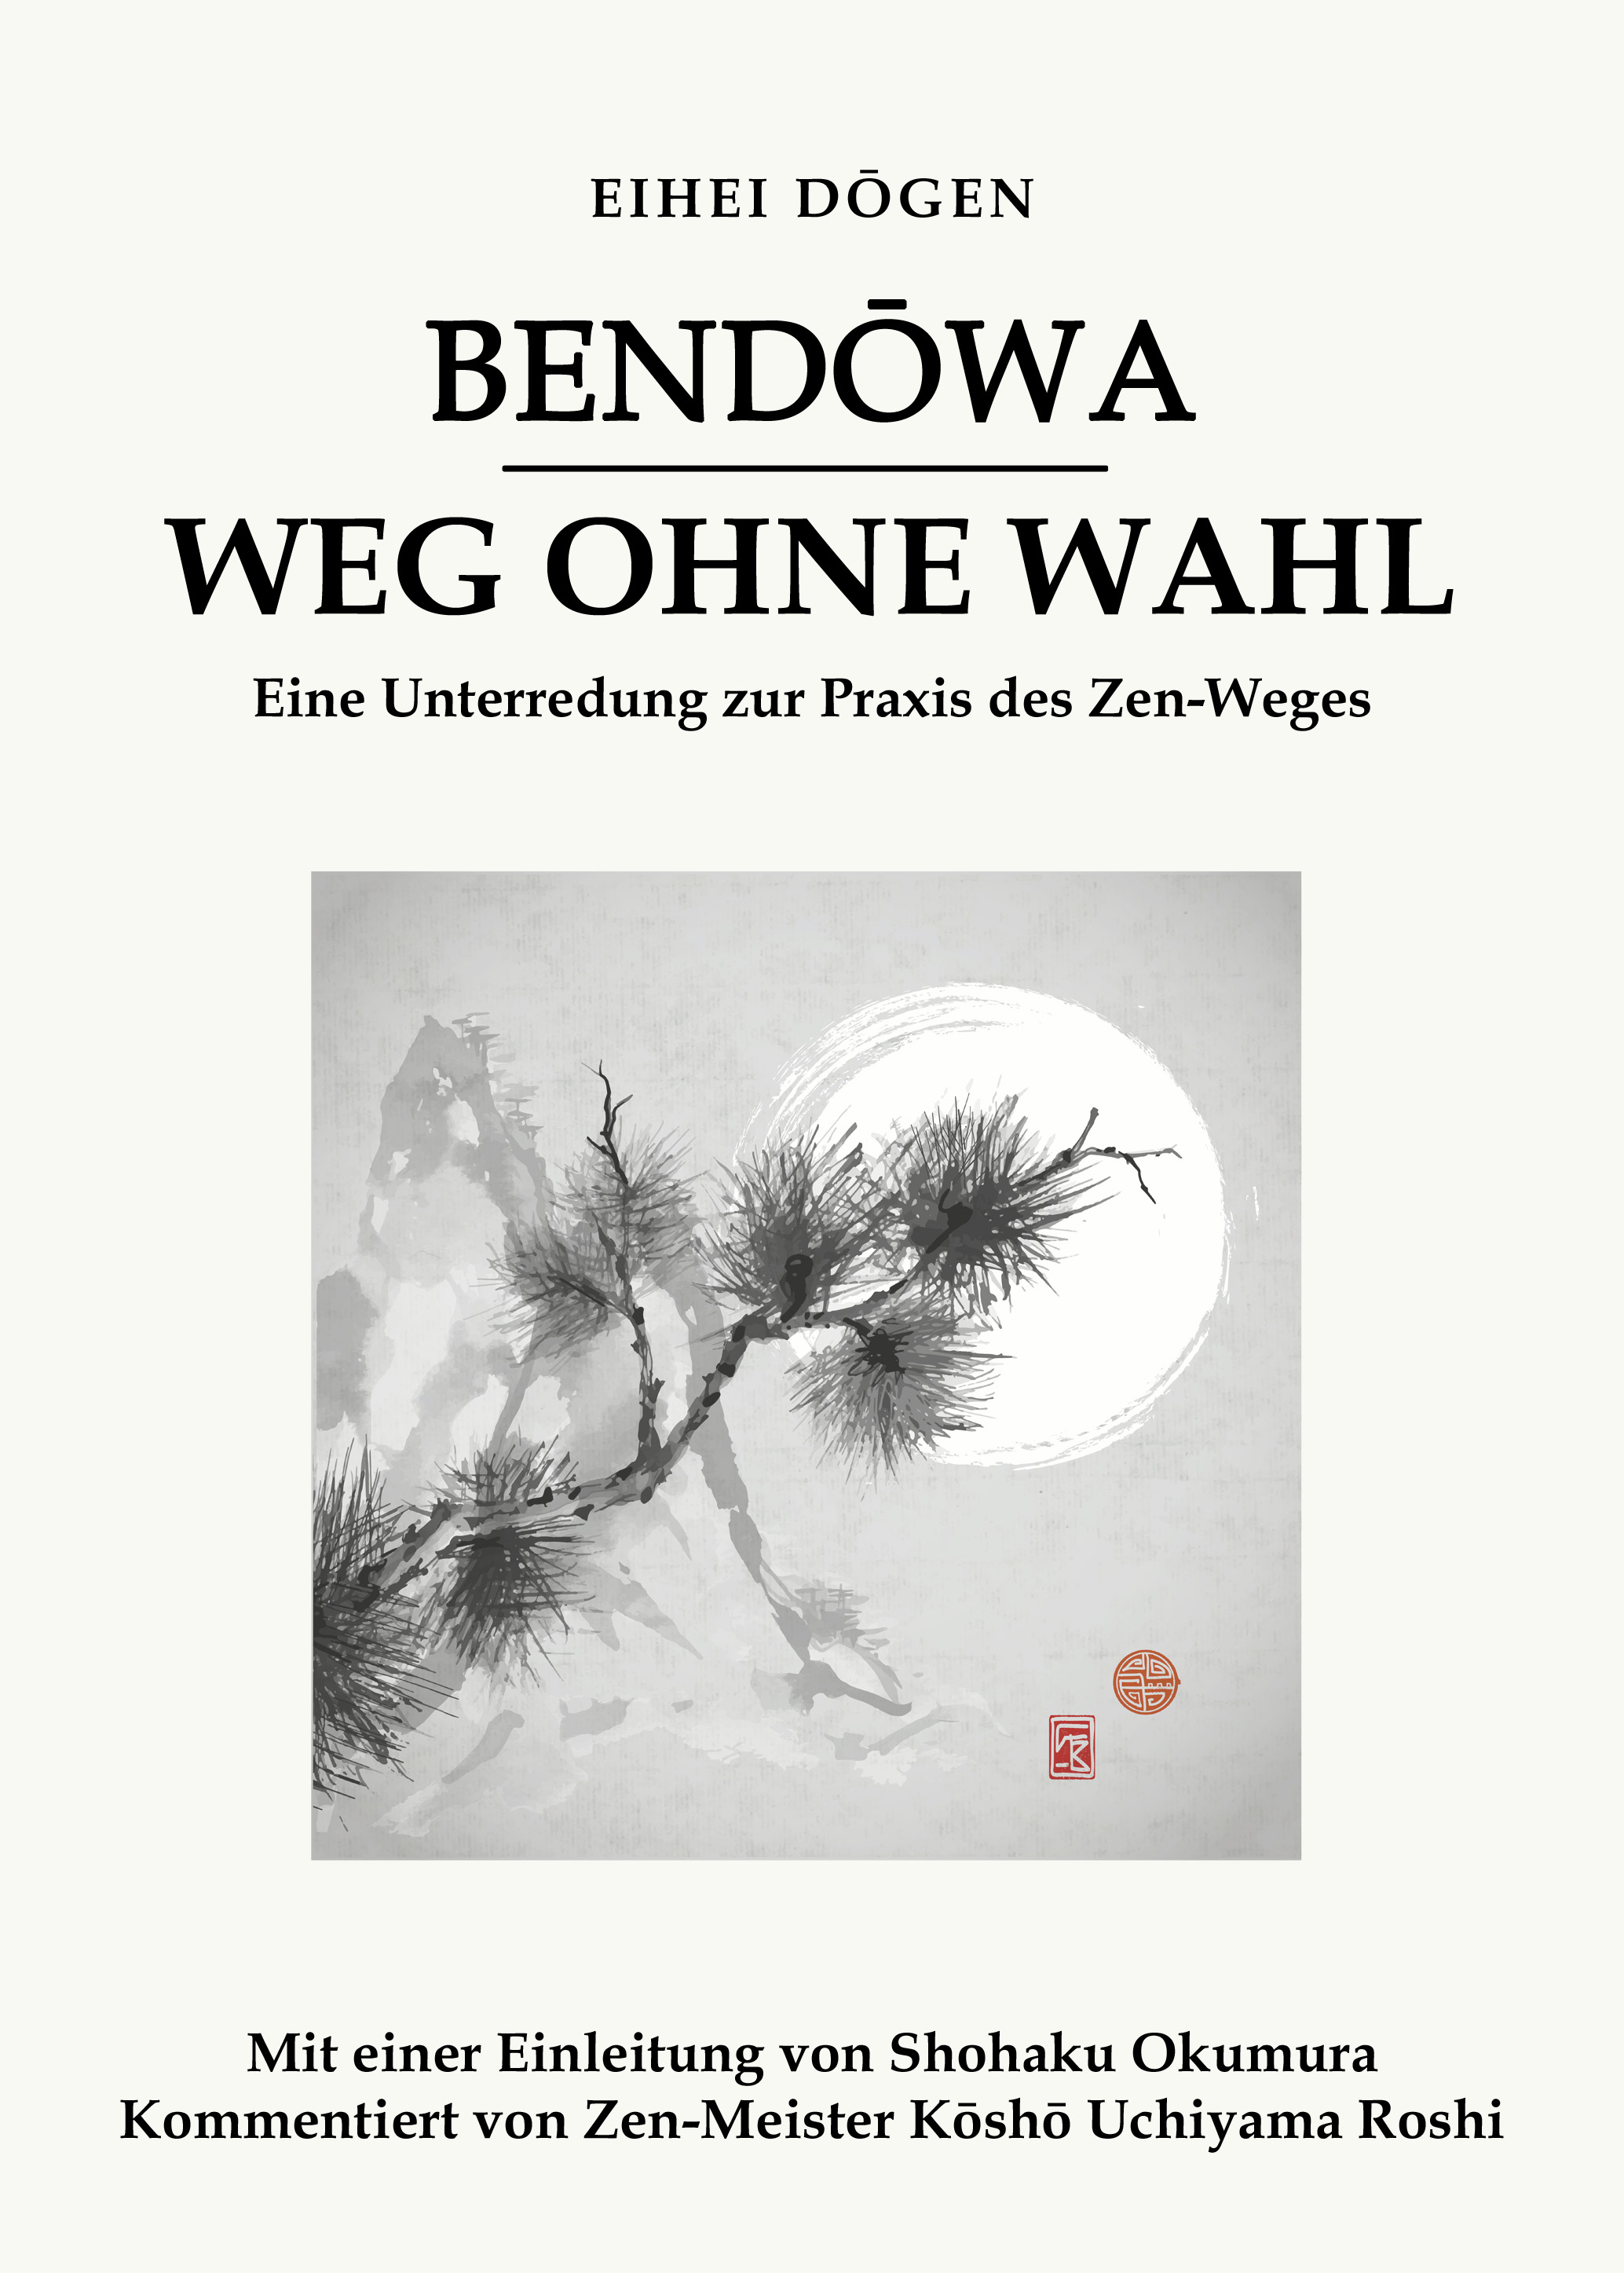 Bendōwa - Weg ohne Wahl: Eine Unterredung zur Praxis des Zen-Weges